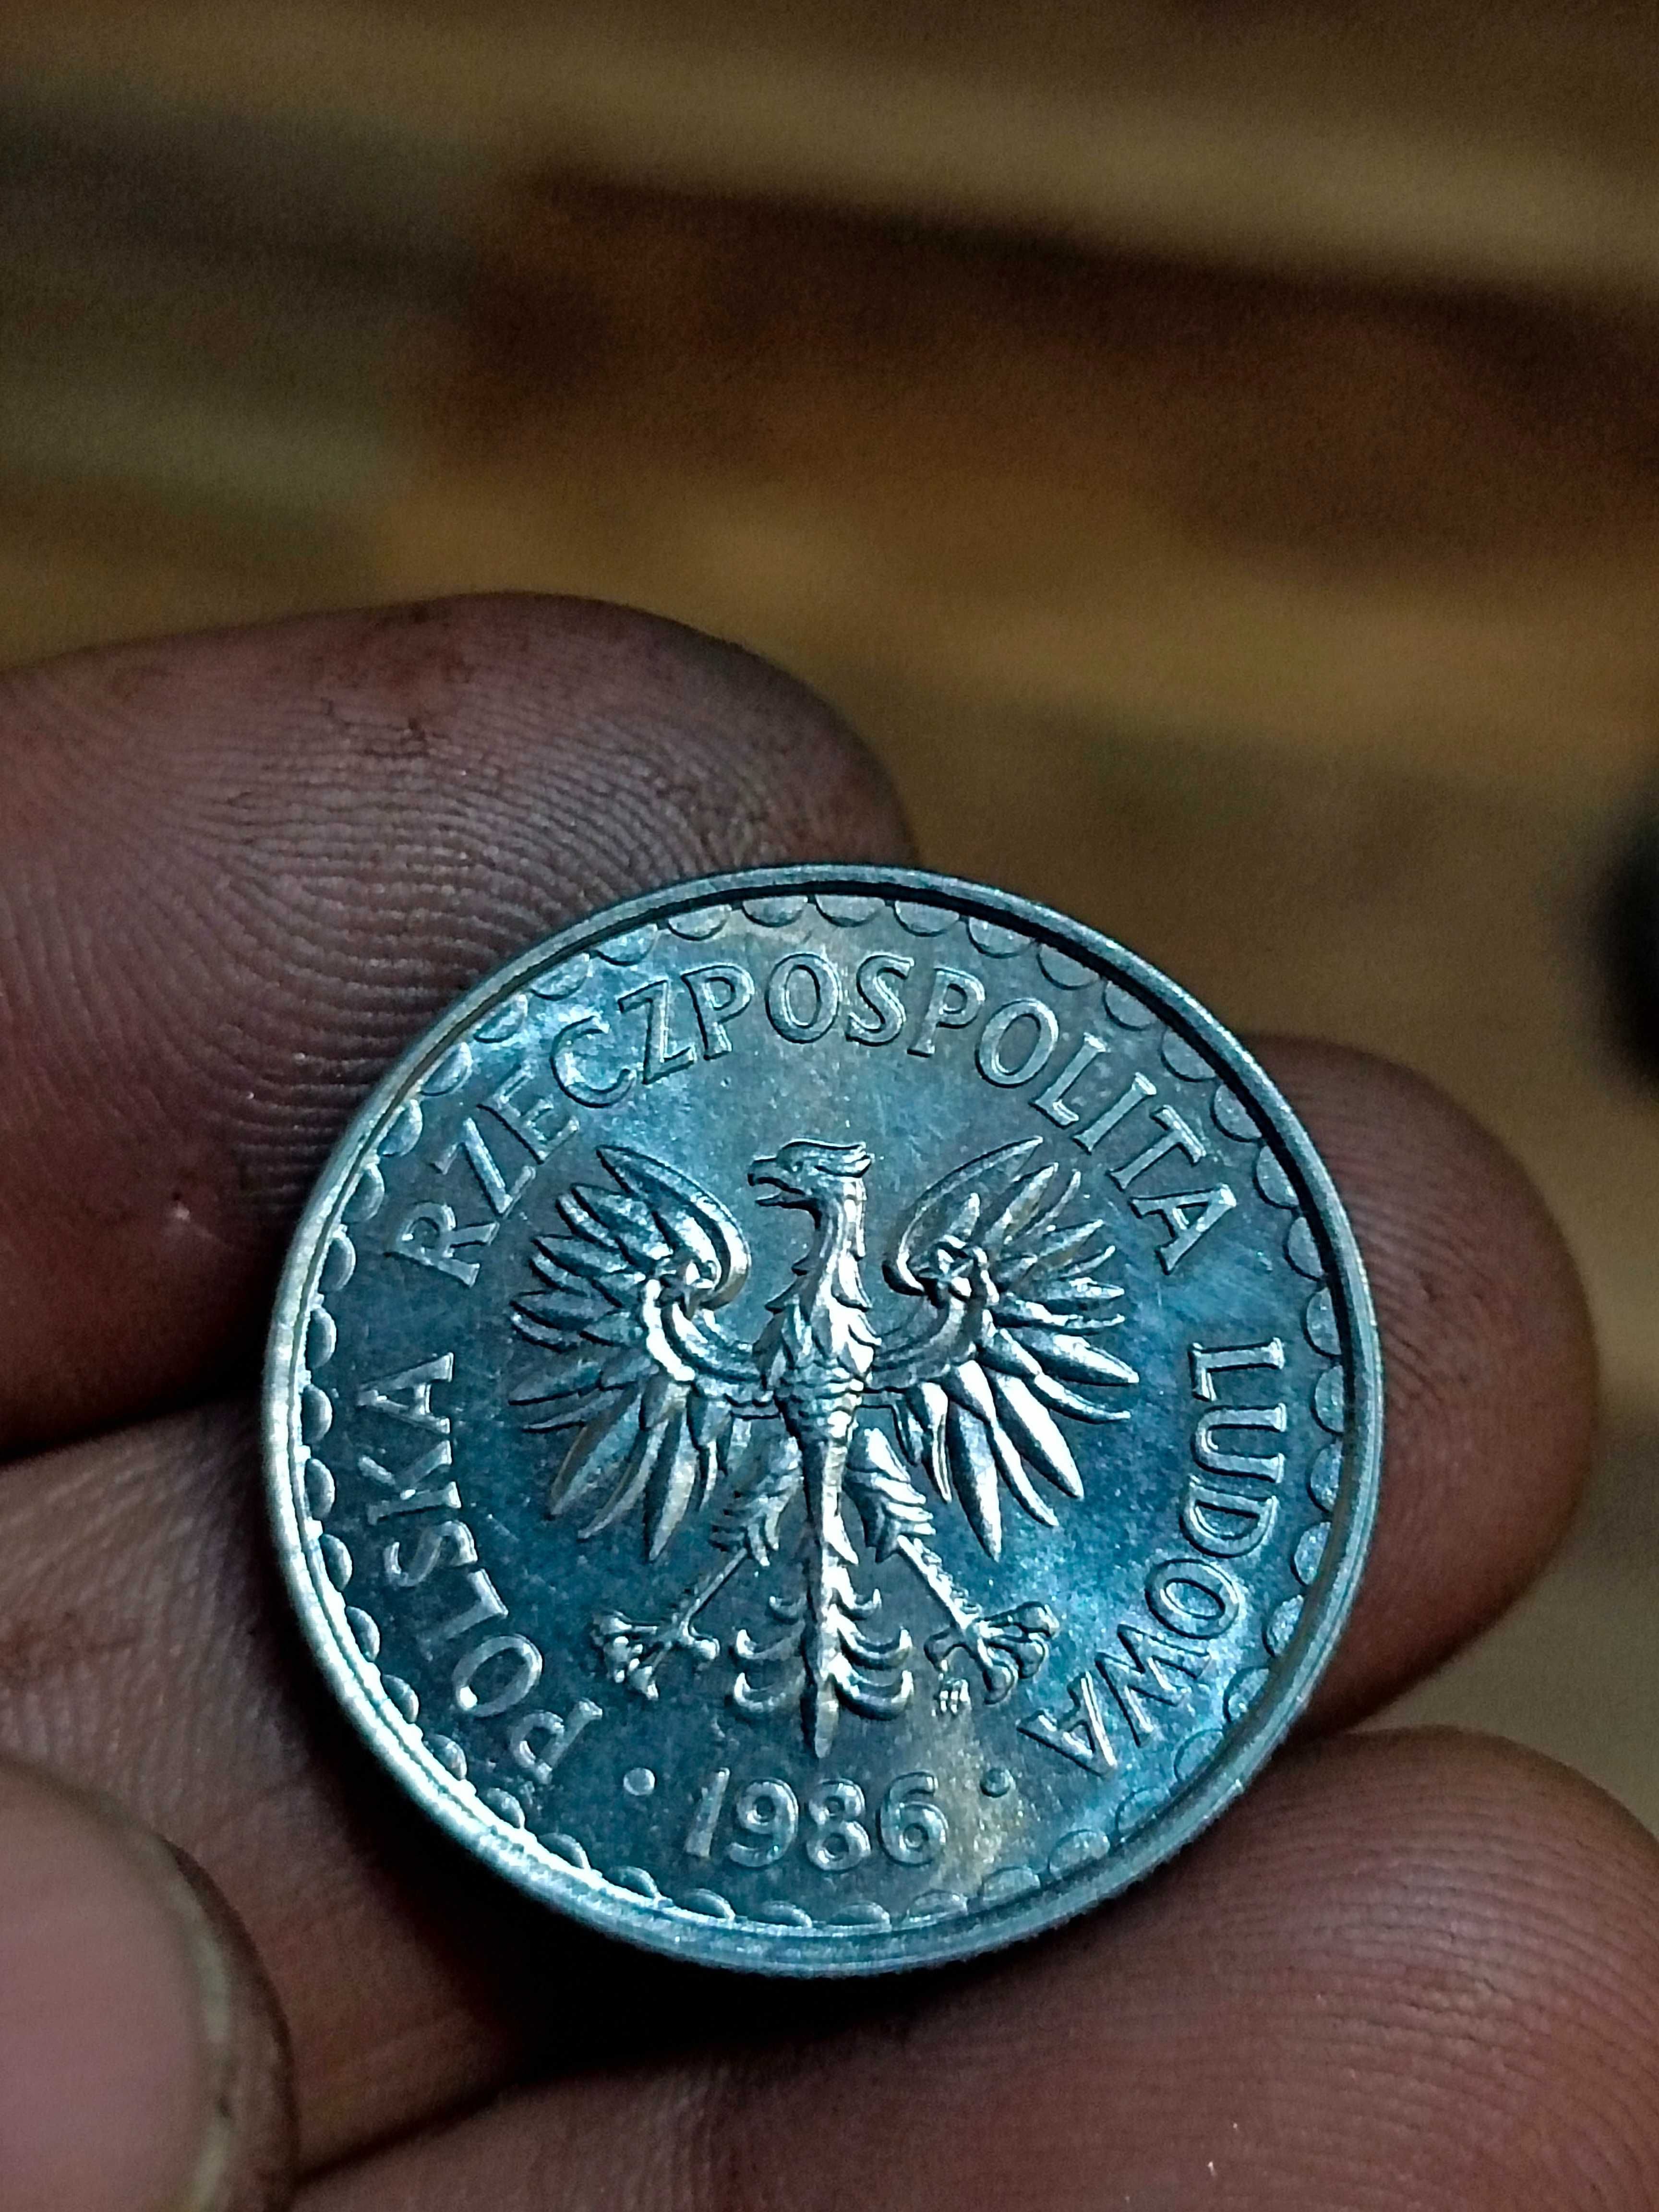 Sprzedam monete 1 zl 1986 bardzo dobrze zachowana